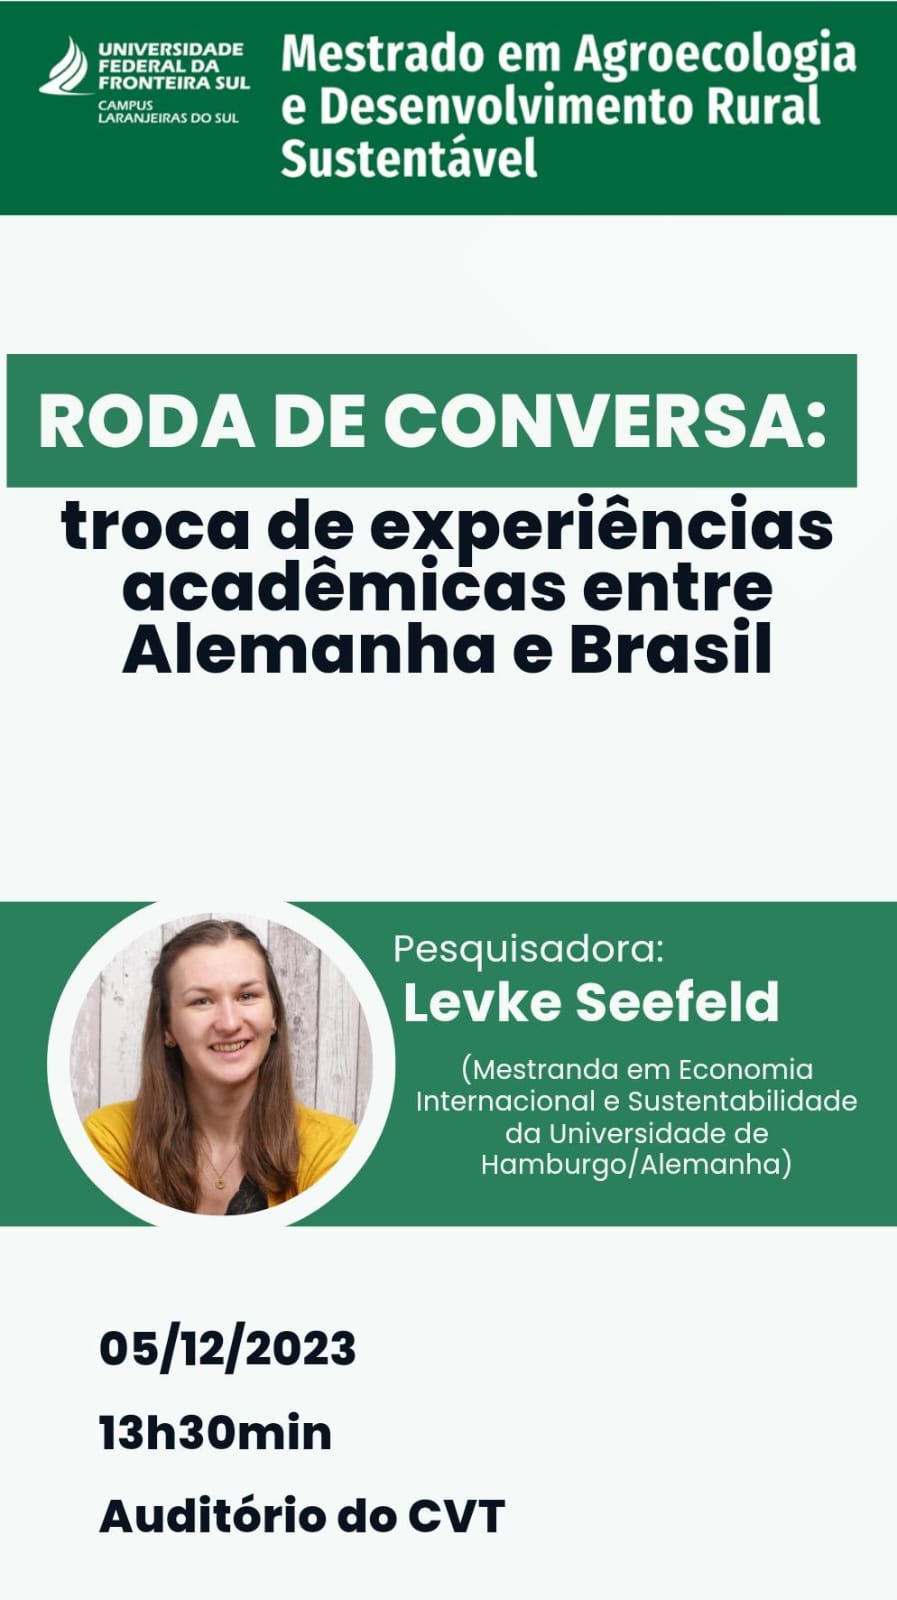 Roda de conversa: troca de experiências acadêmicas entre Alemanha e Brasil